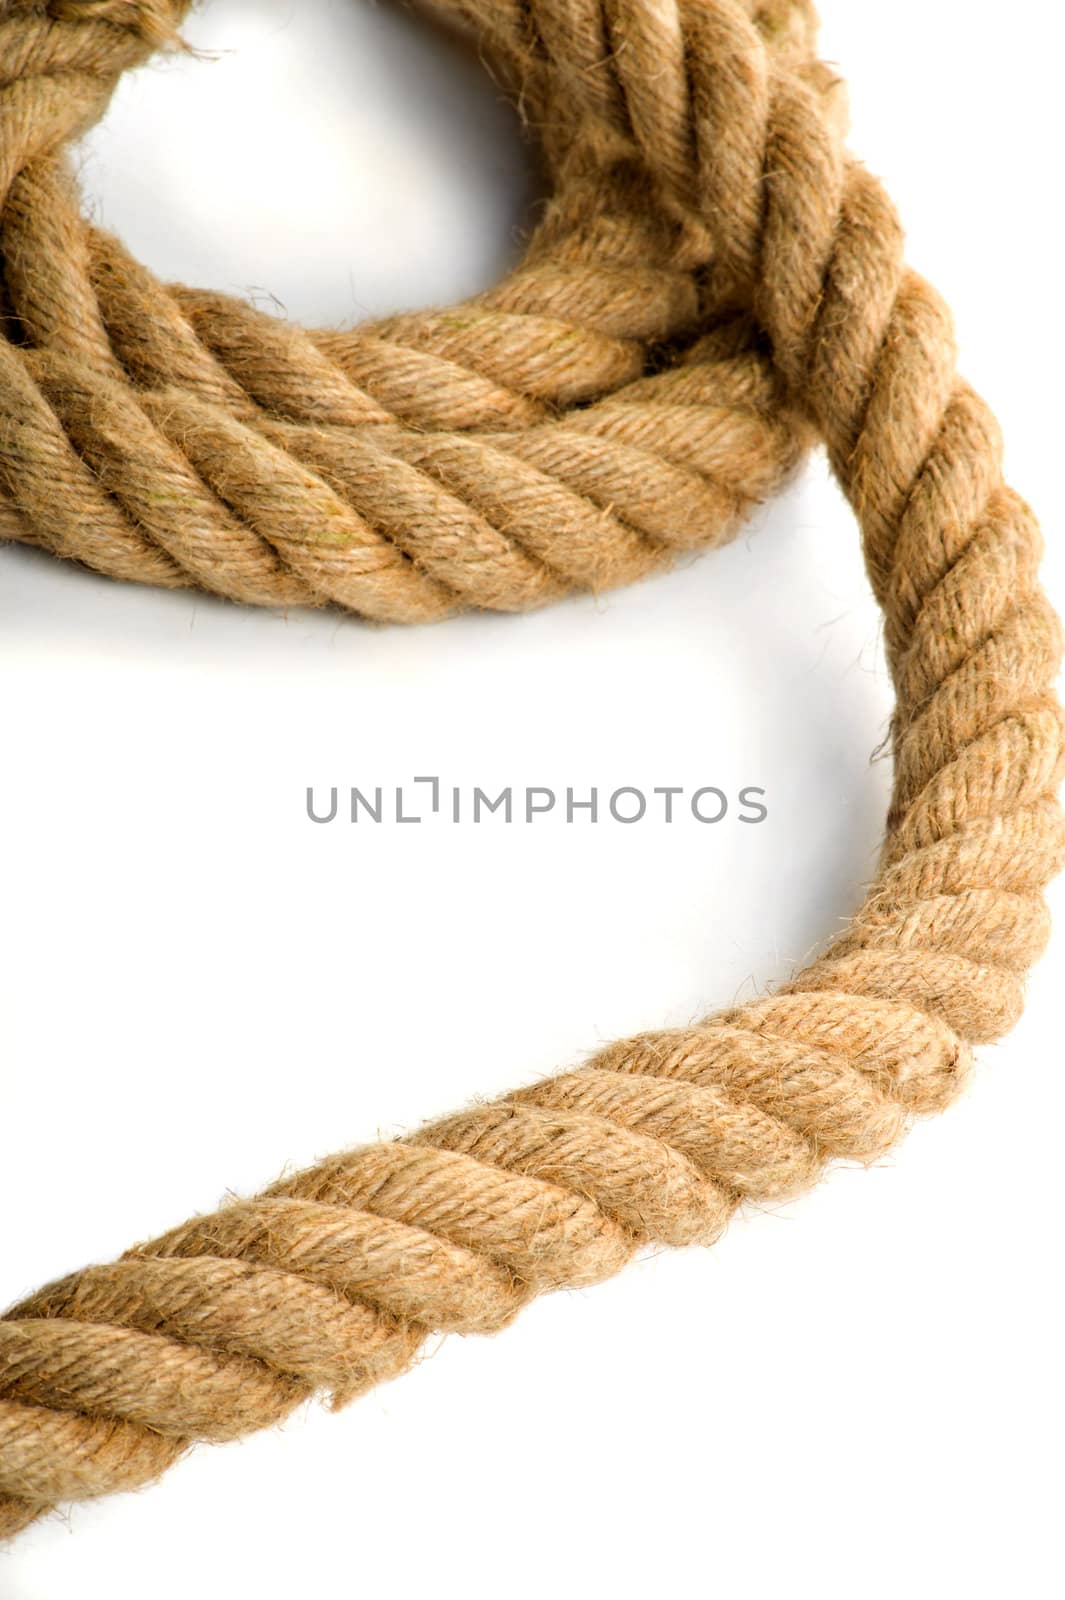 Rope2 by Kamensky